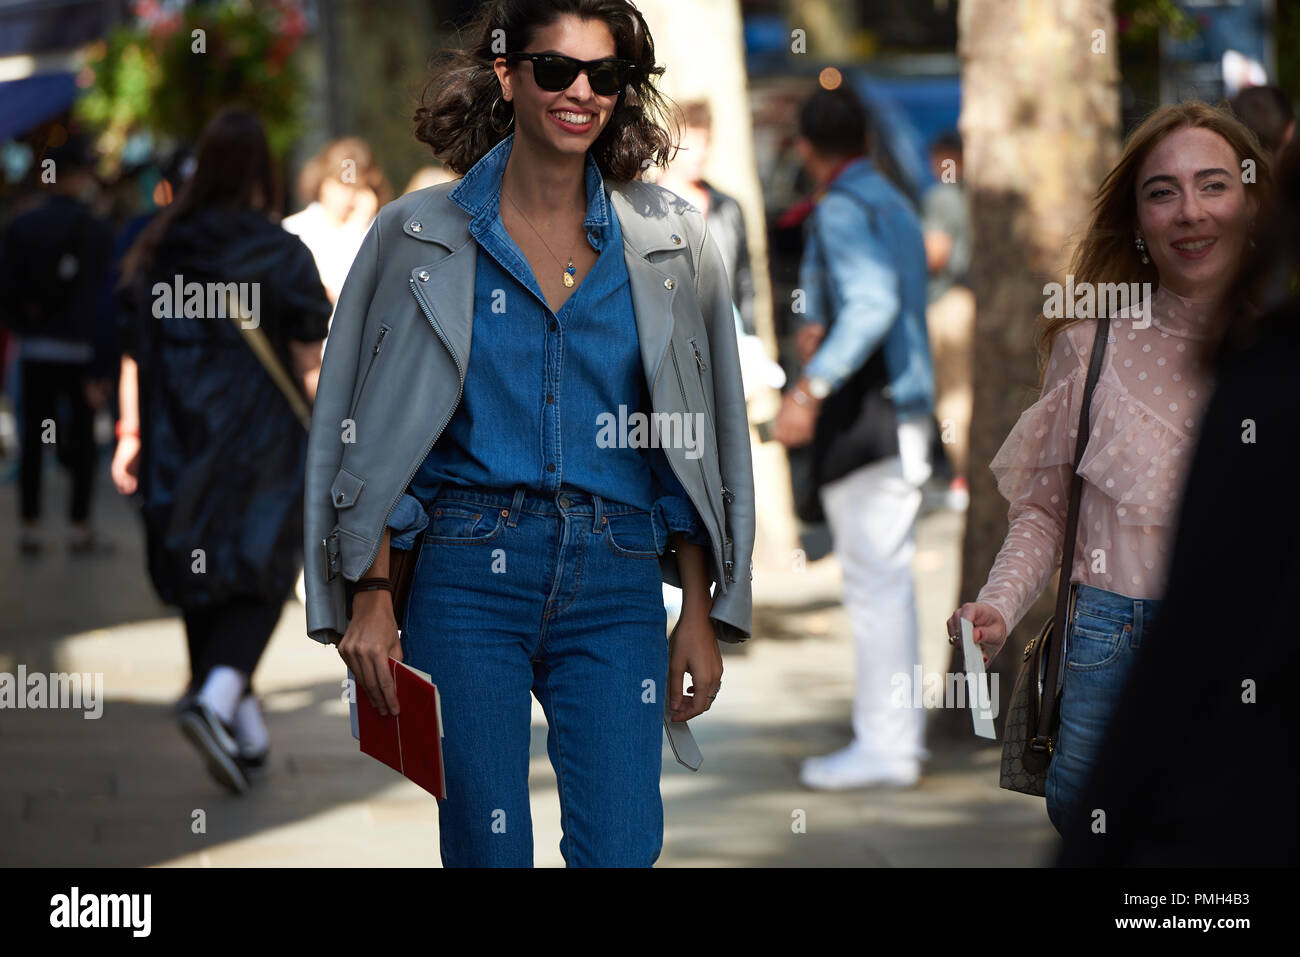 Londres, Royaume-Uni. 16 septembre 2018, Street Style, printemps été 2019, Fashion Week de Londres, UK Crédit : Saira MacLeod/Alamy Live News Banque D'Images